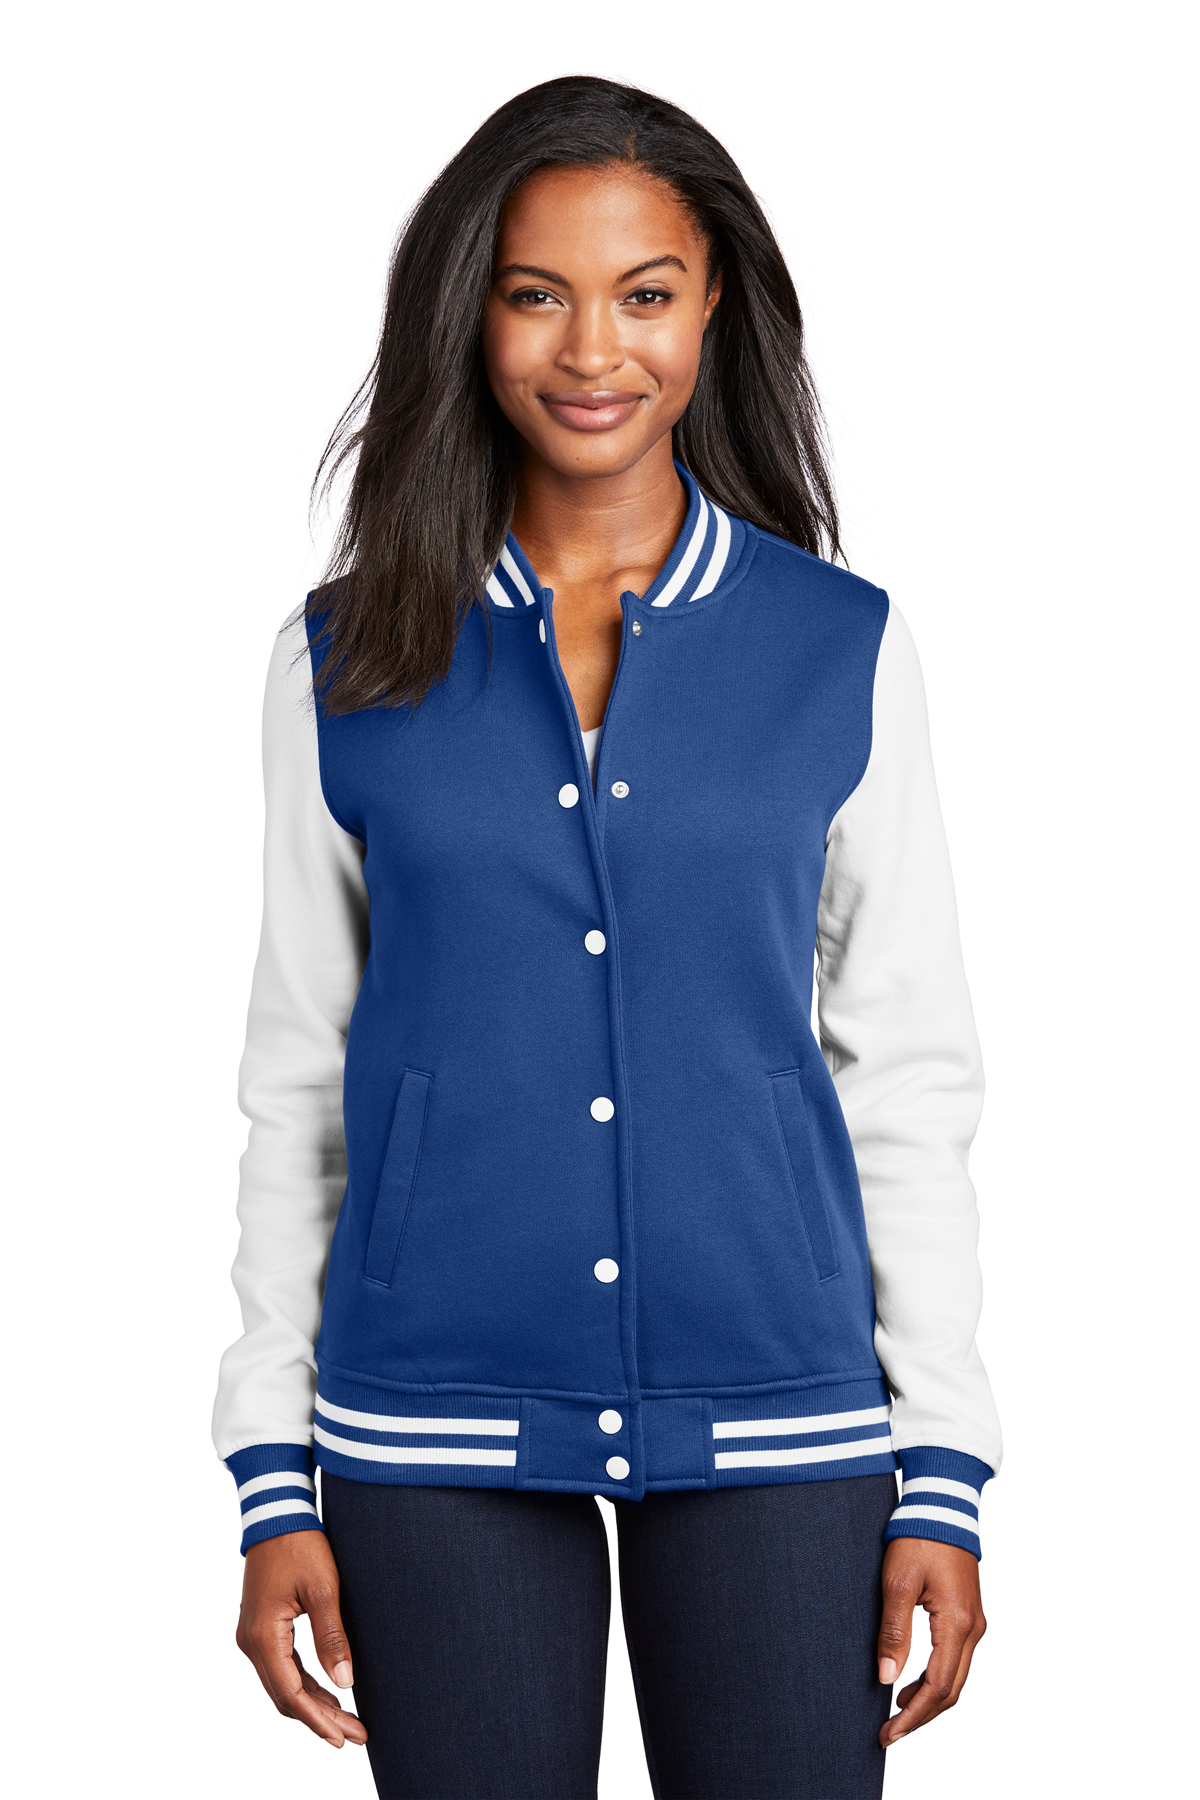 Royal Blue Cotton Fleece Varsity Jacket